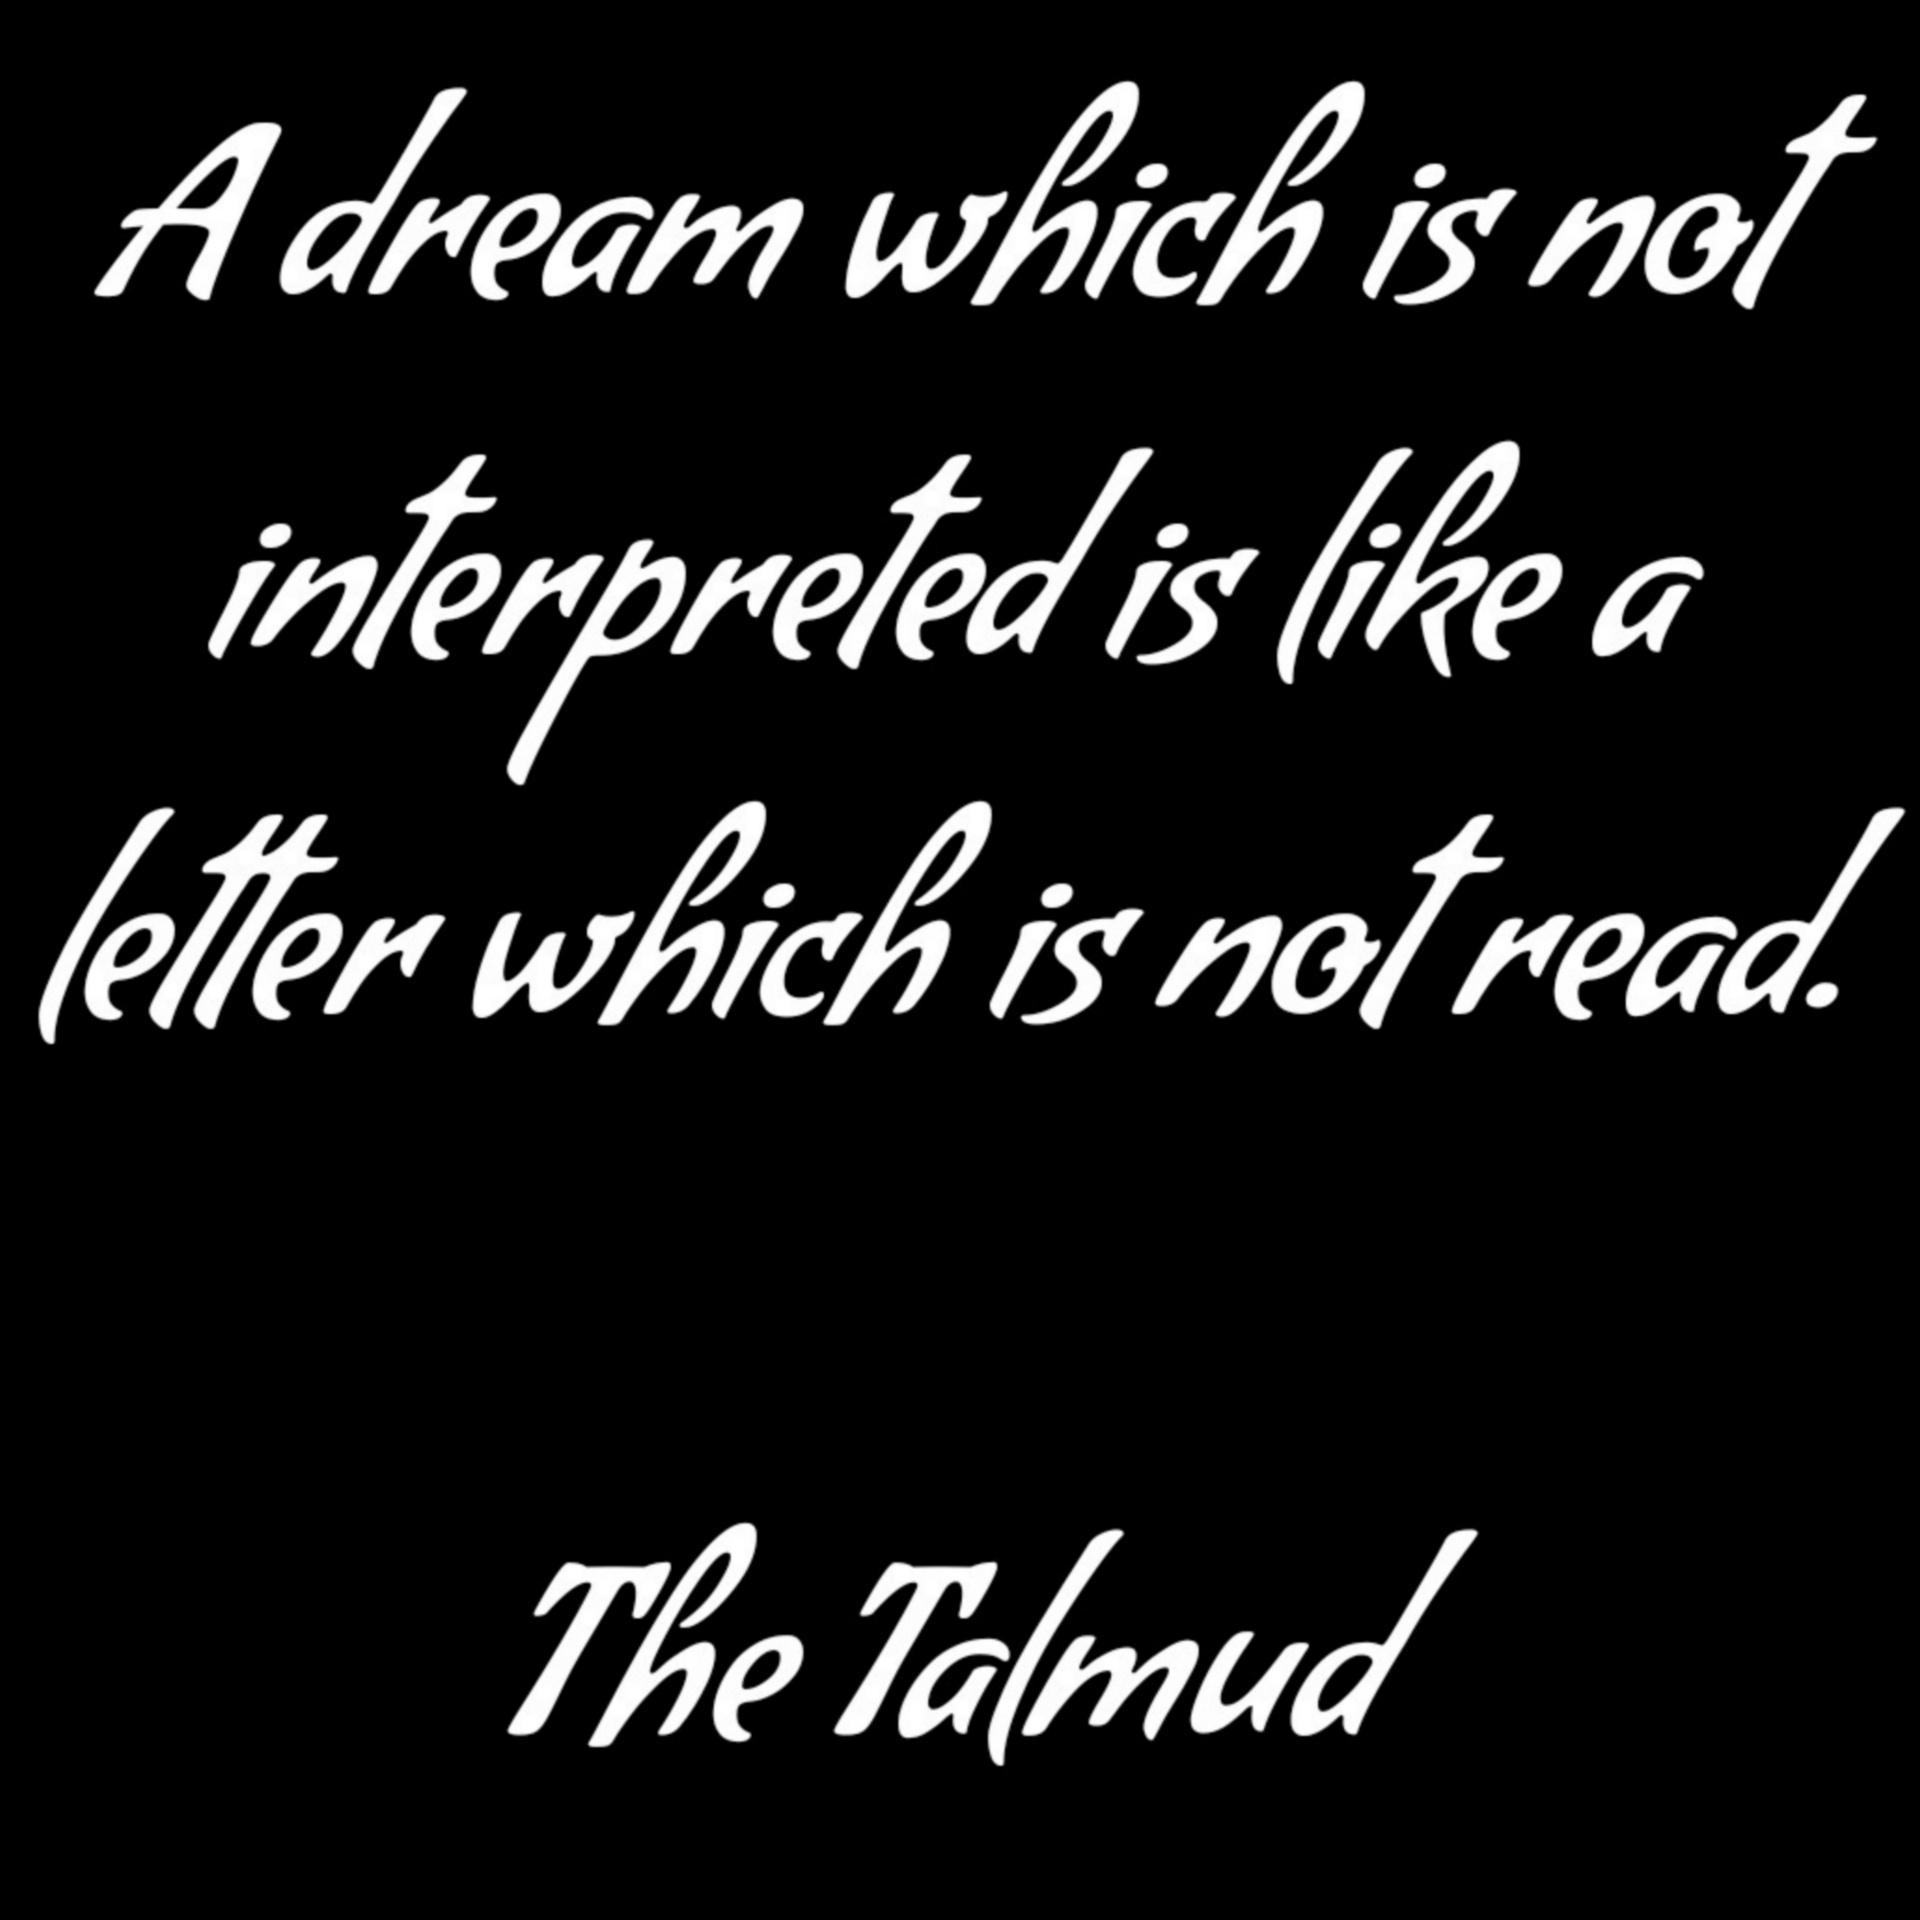 塔玛德对梦的解释